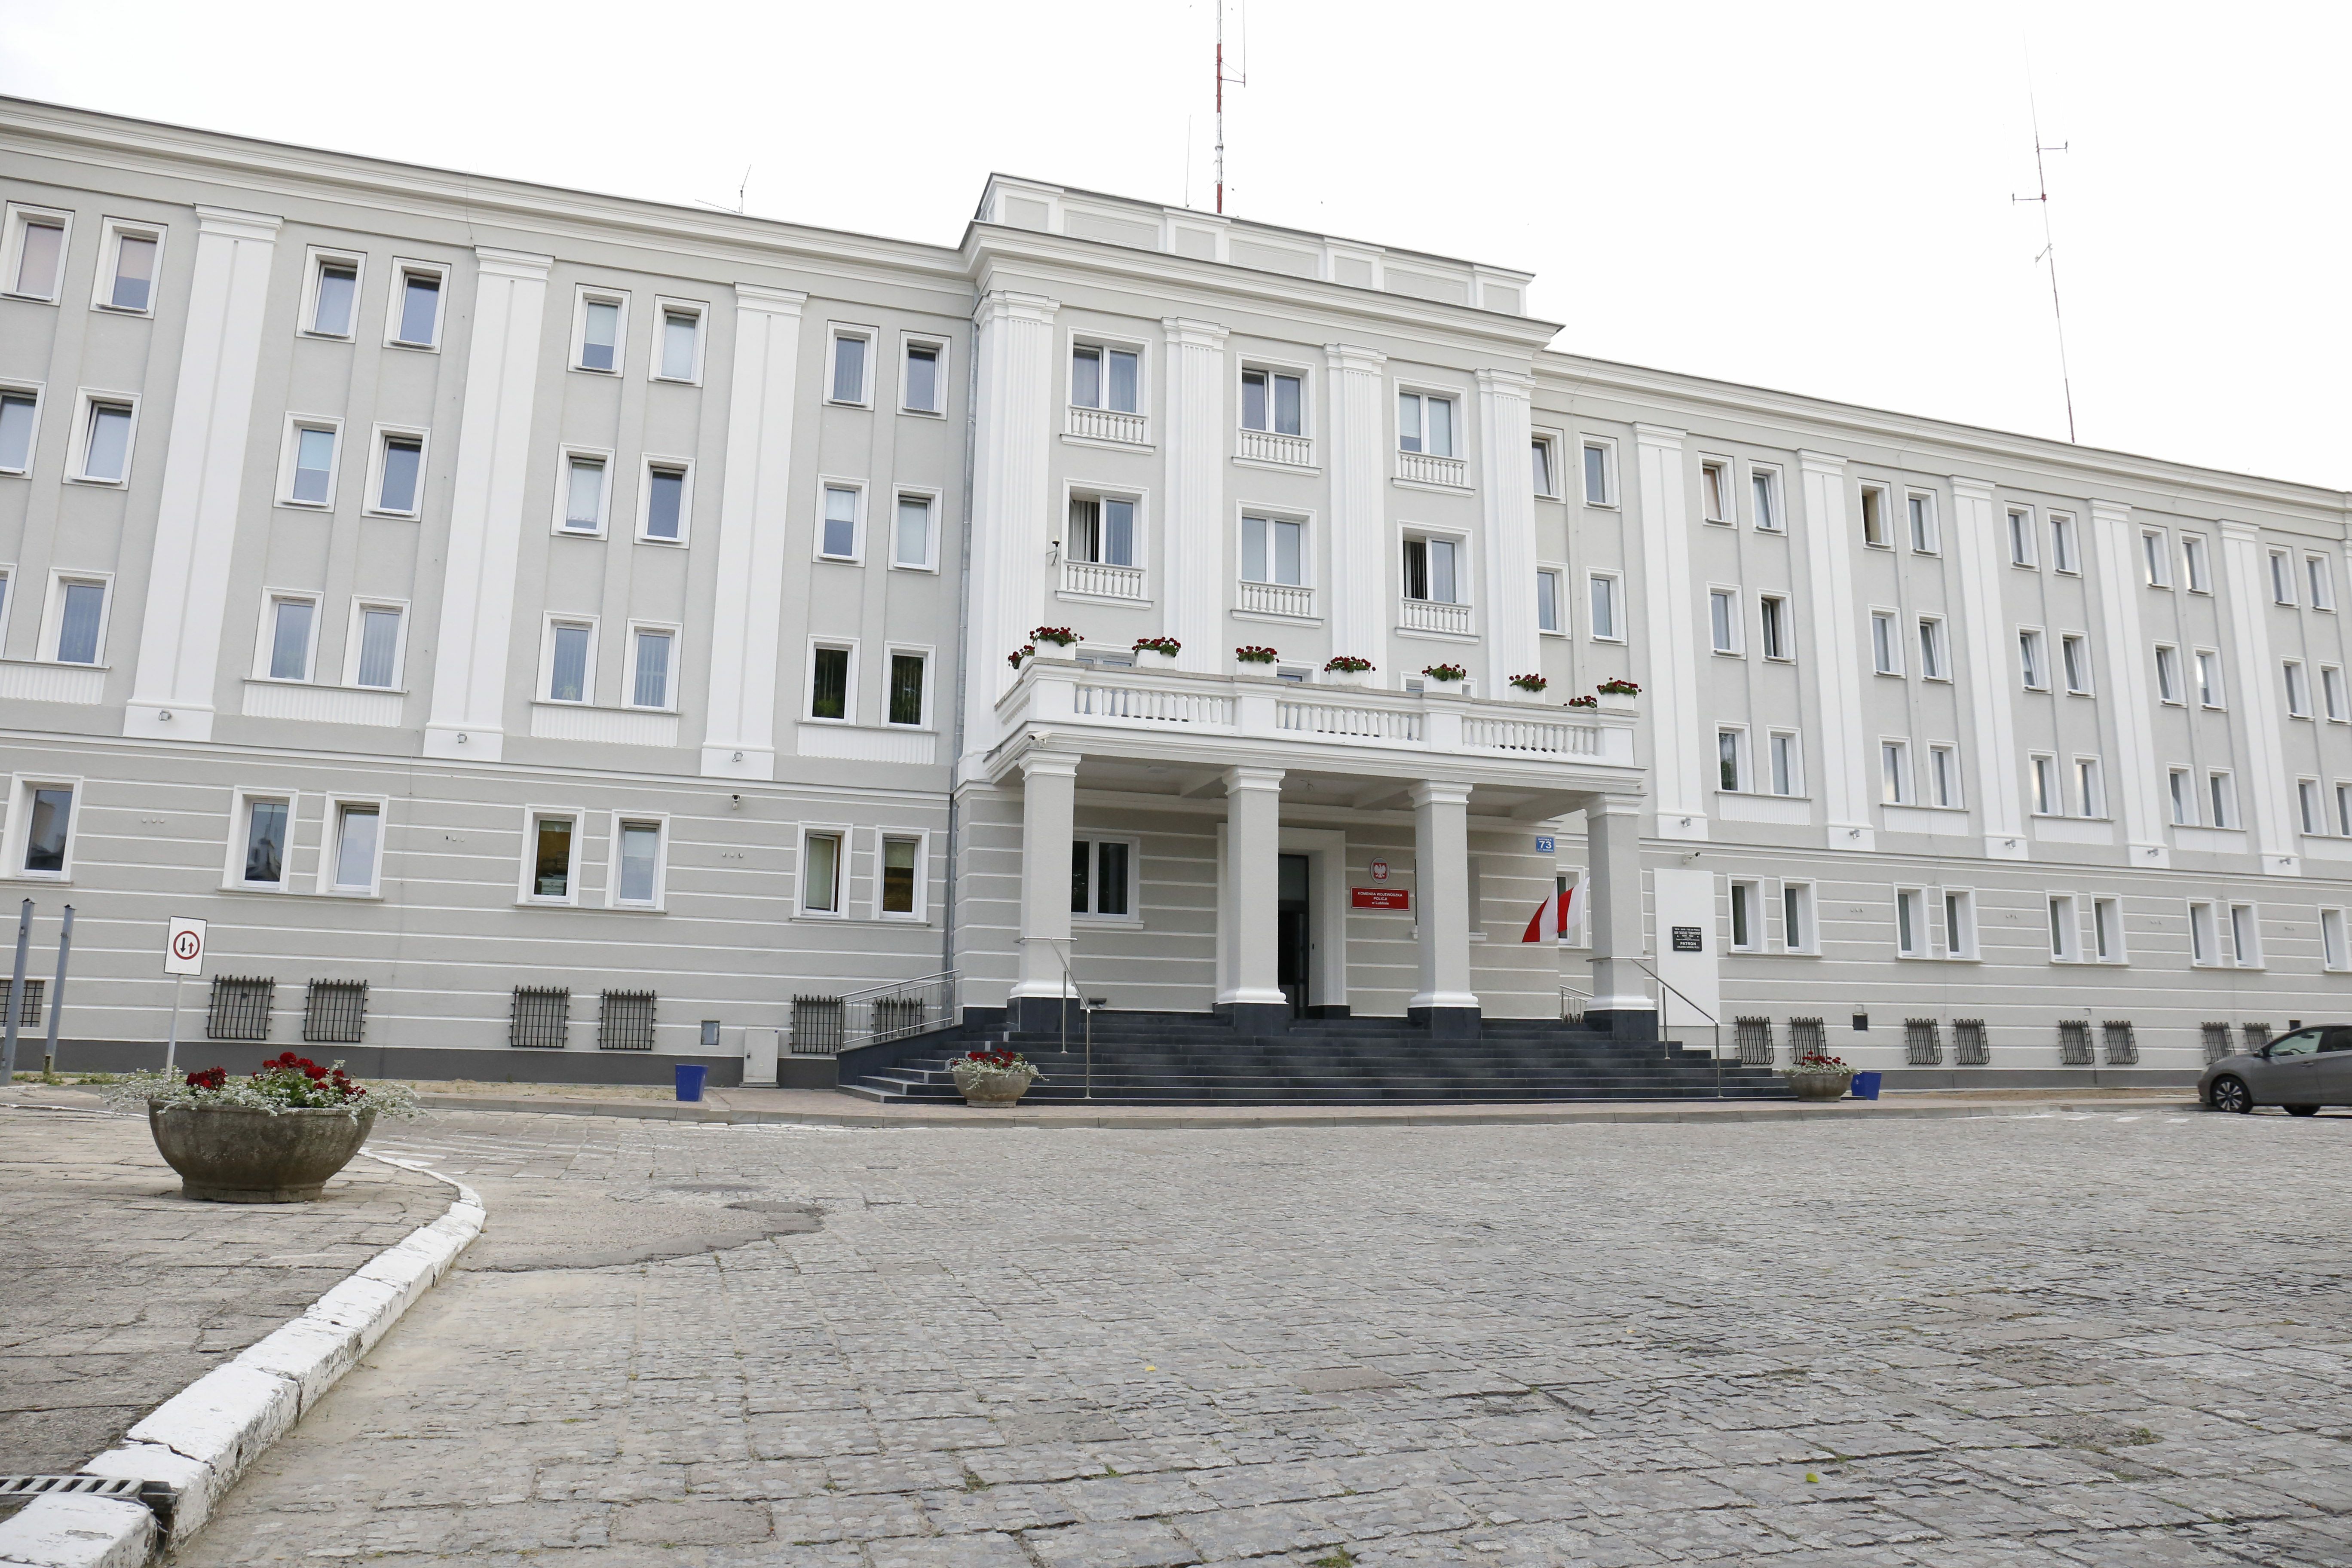 Zdjęcie przedstawia siedzibę Komendy Wojewódzkiej Policji w Lublinie. W kadrze widoczny jest trzypiętrowy budynek w kolorze biało-szarym. Zdjęcie przedstawia wejście główne do budynku, zlokalizowane od strony ulicy Narutowicza.  